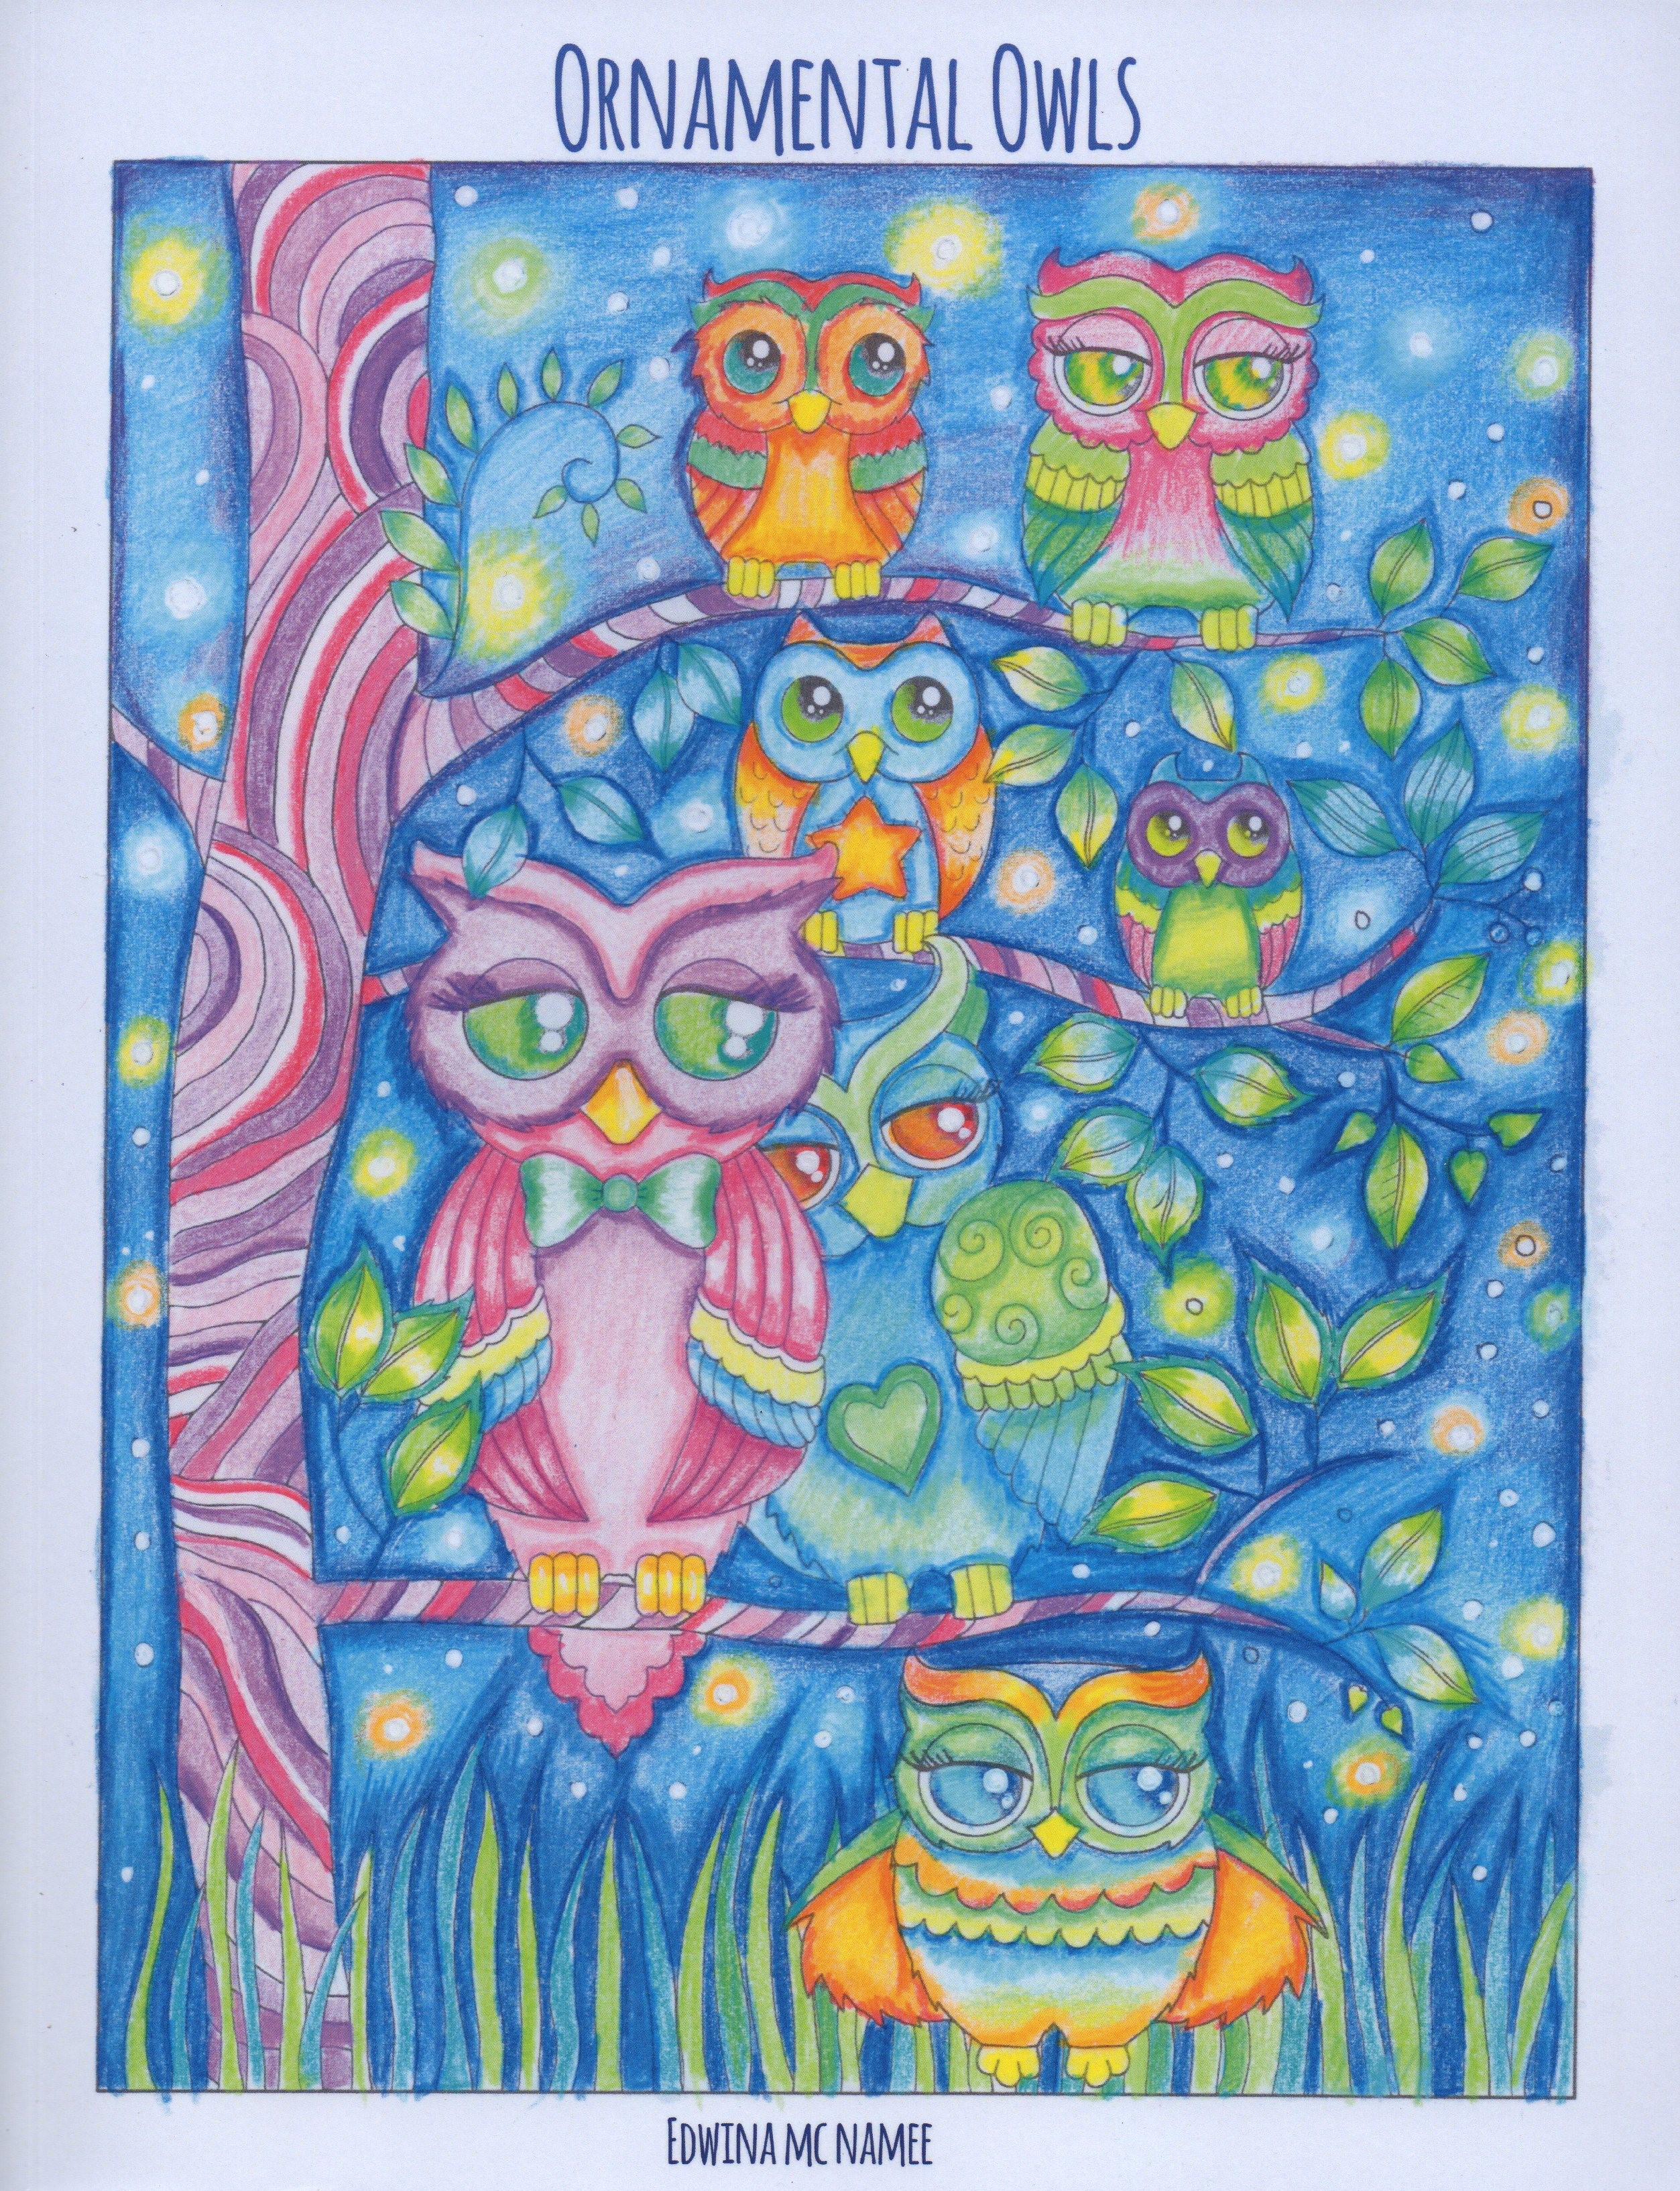 Ornamental Owls